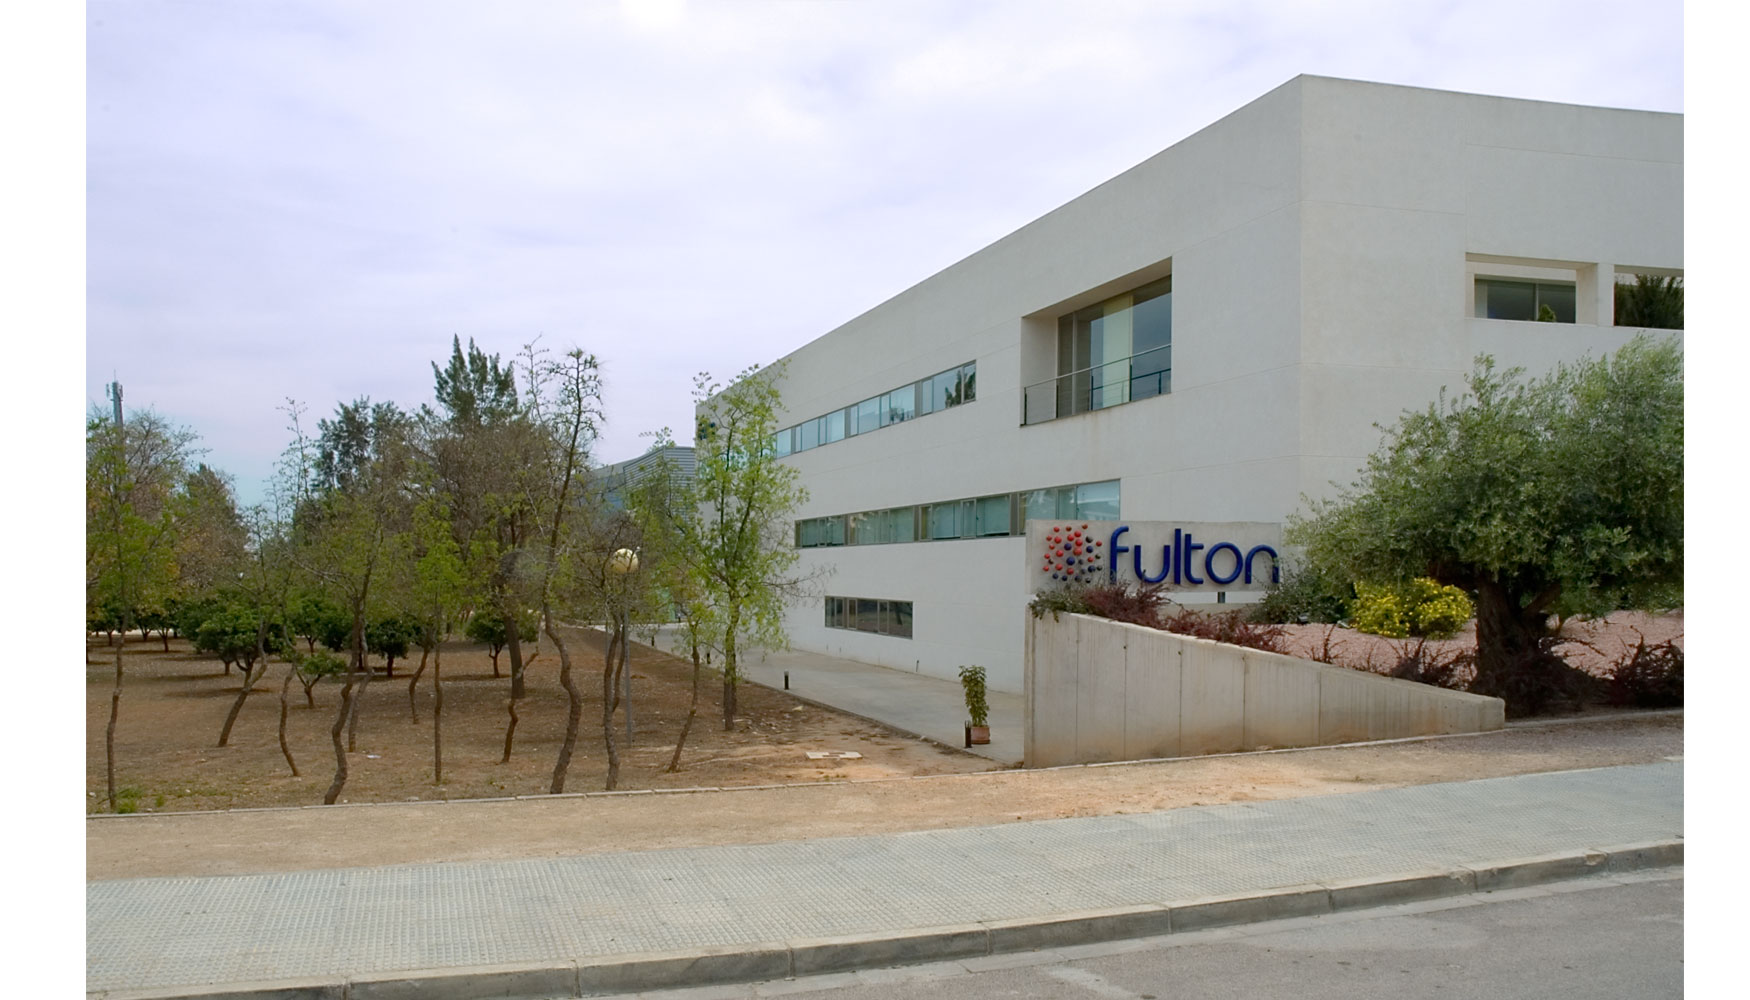 Sede central de Fulton ubicada en el Parque Tecnolgico de Paterna (Valencia)